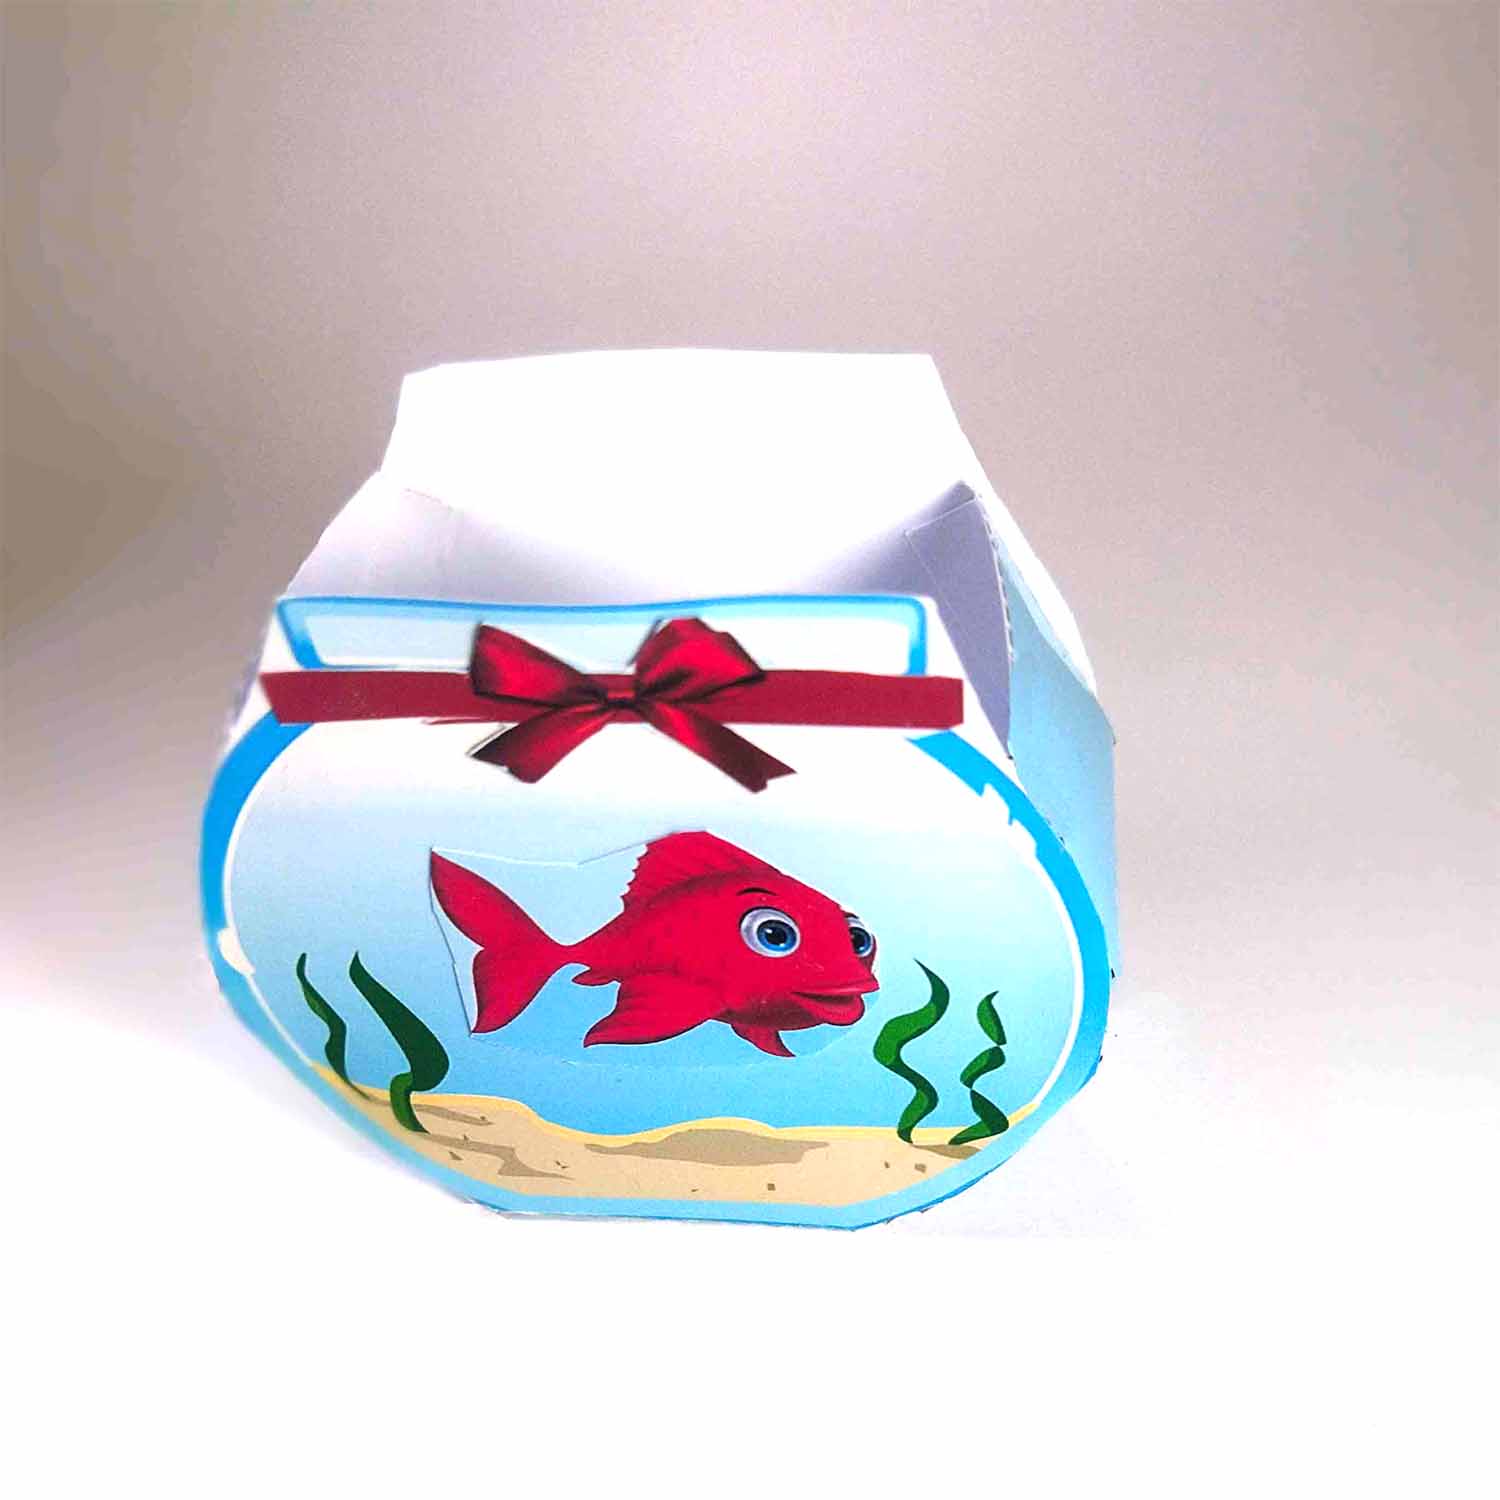 بازی فکری چسب کاغذ قیچی مدل تنگ ماهی